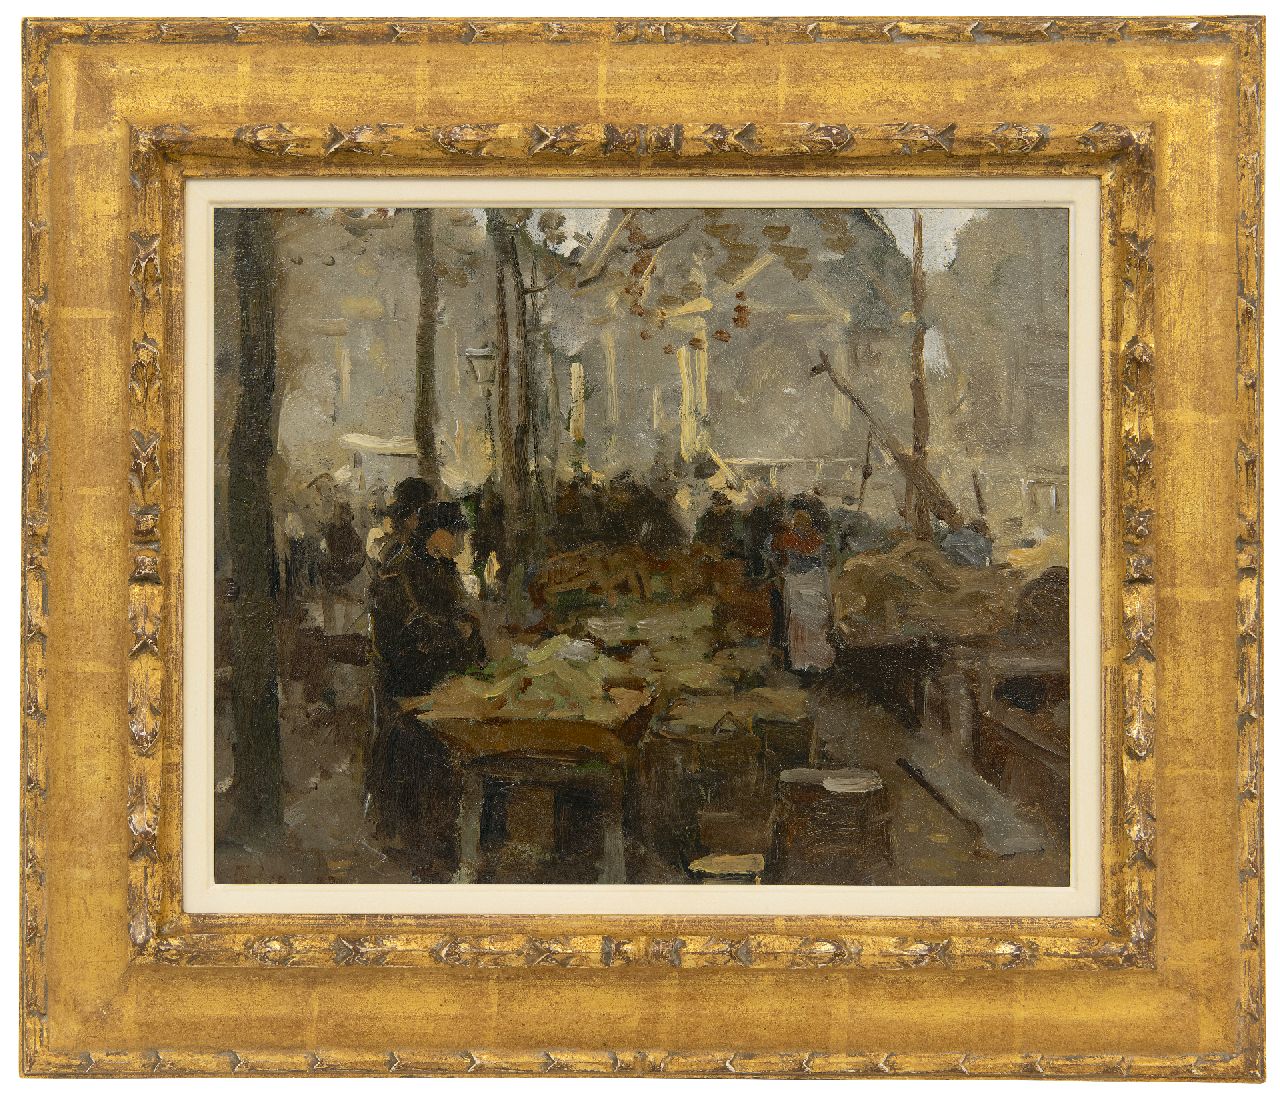 Tholen W.B.  | Willem Bastiaan Tholen | Schilderijen te koop aangeboden | Markt op de kade, olieverf op paneel 29,1 x 35,9 cm, gesigneerd linksonder en gedateerd '83